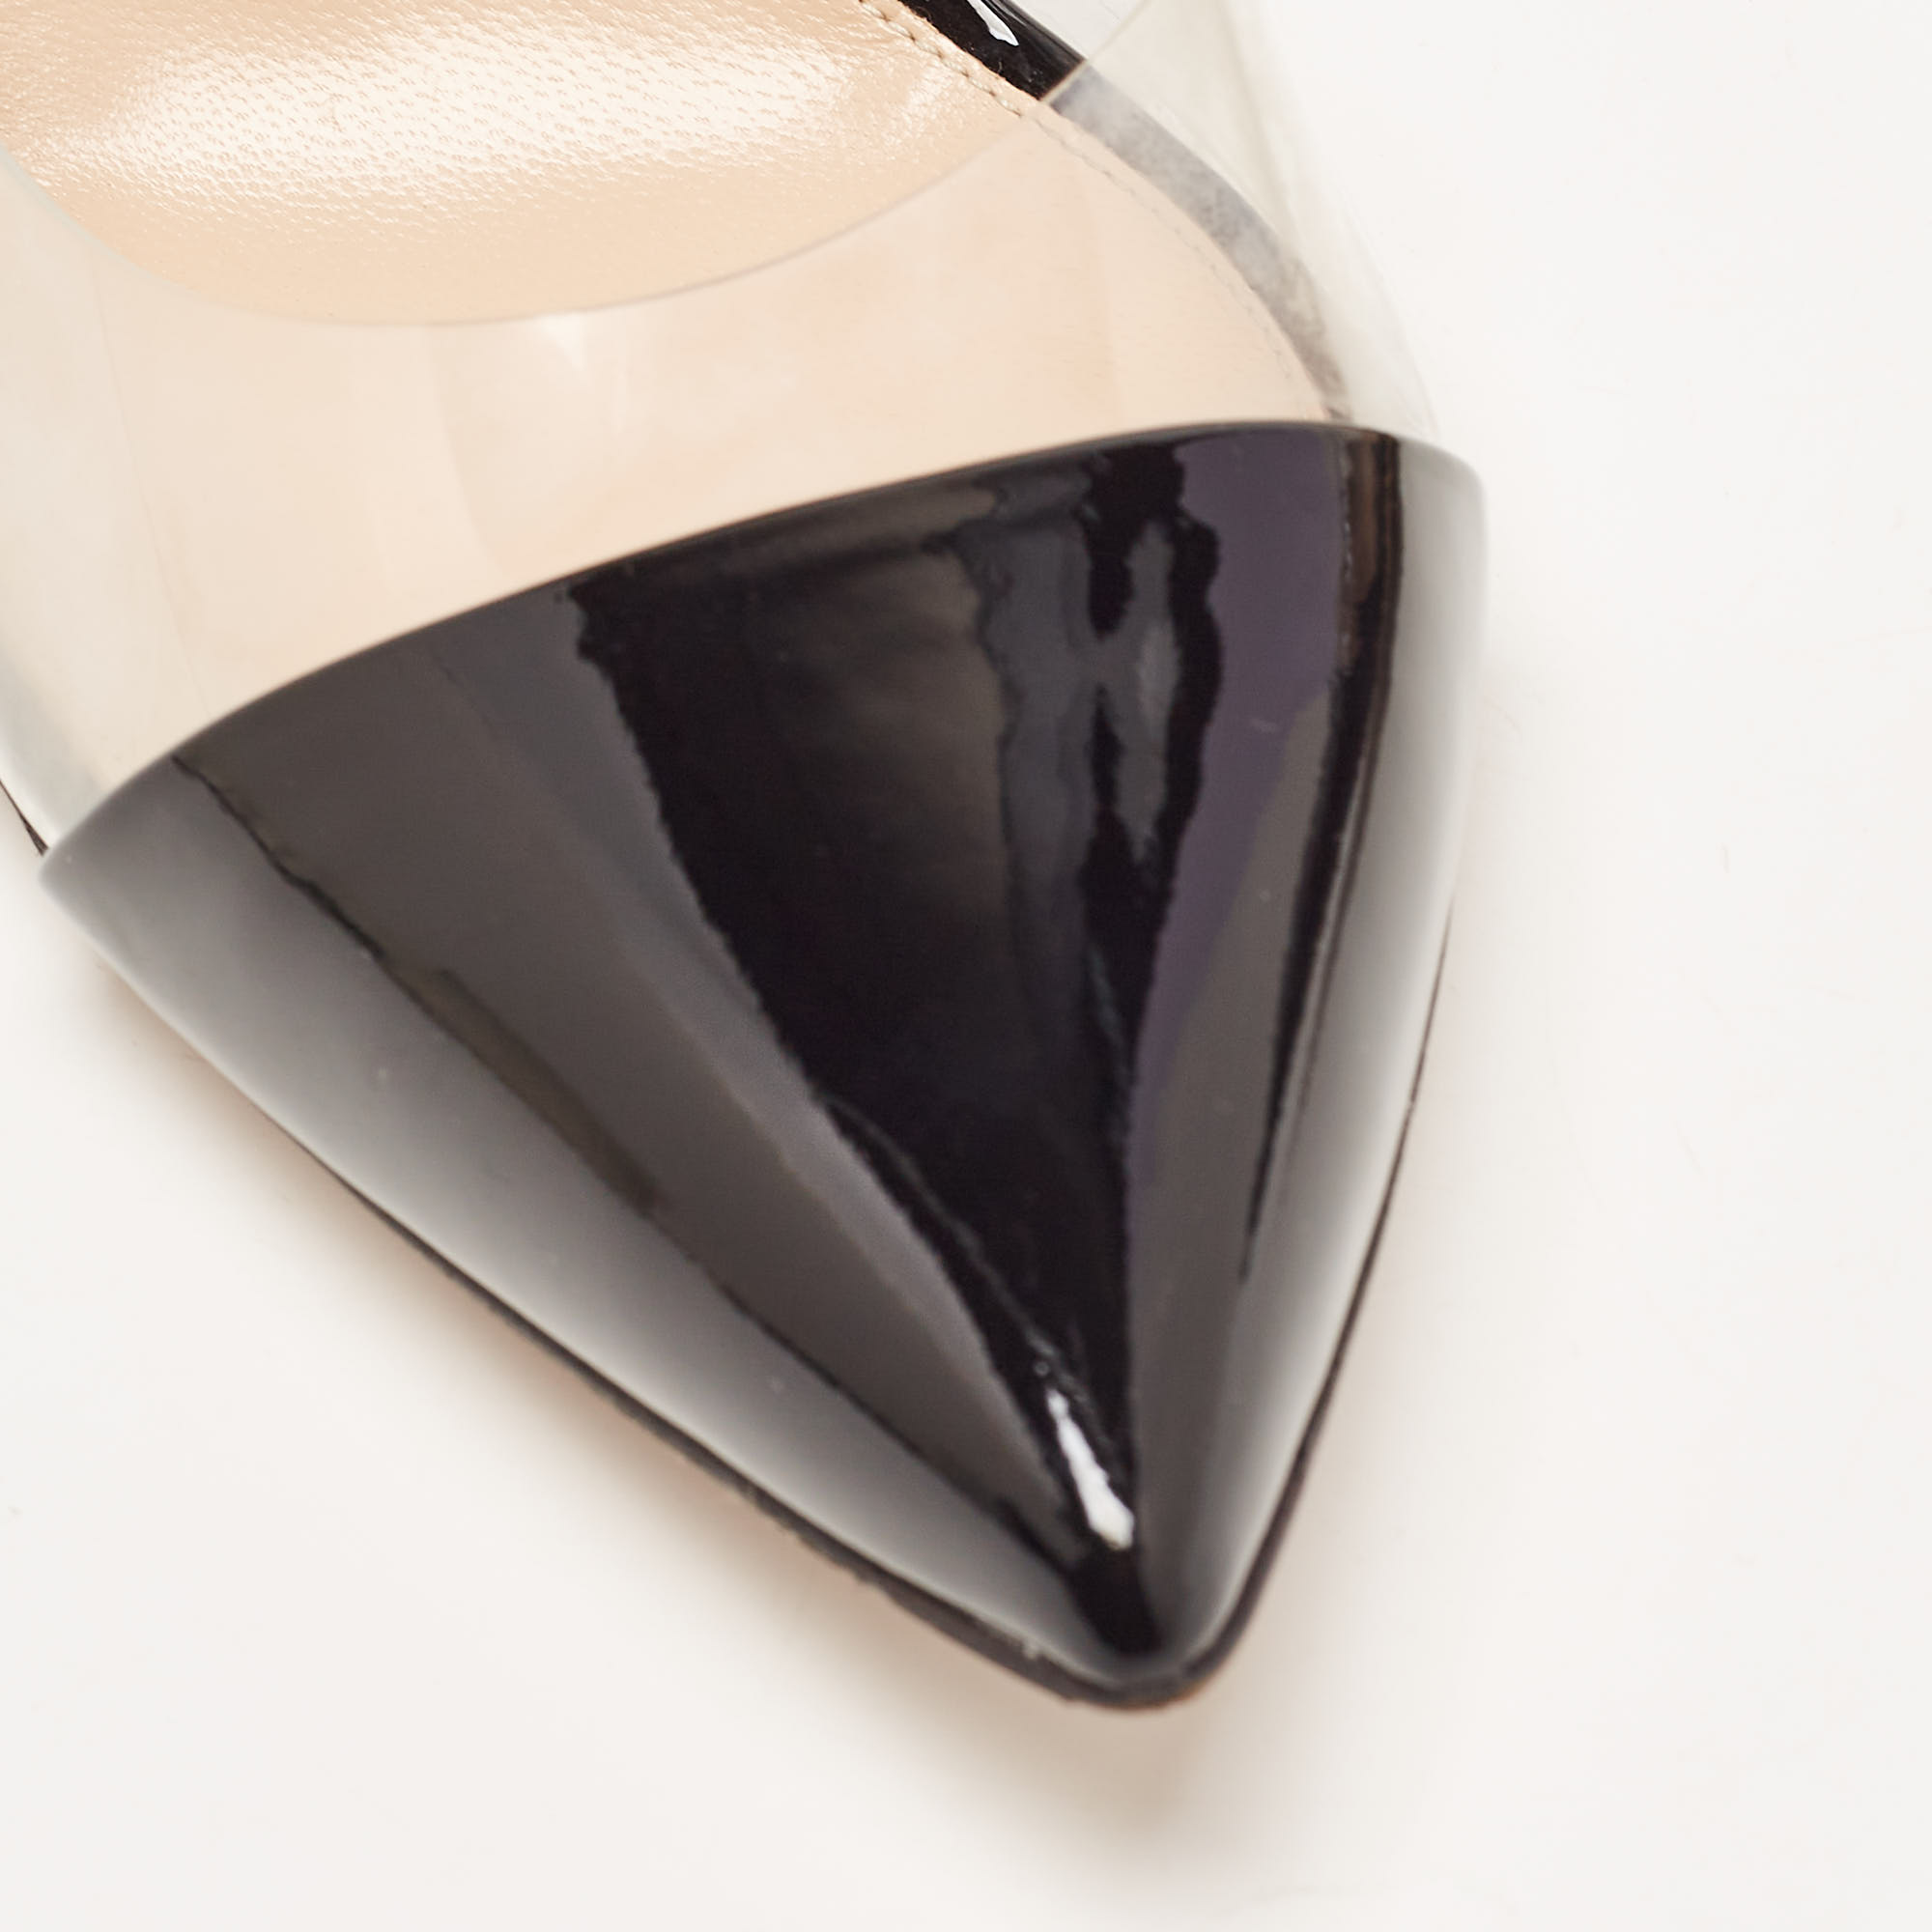 Gianvito Rossi Black Patent Leather And PVC Plexi Pumps Size 40.5